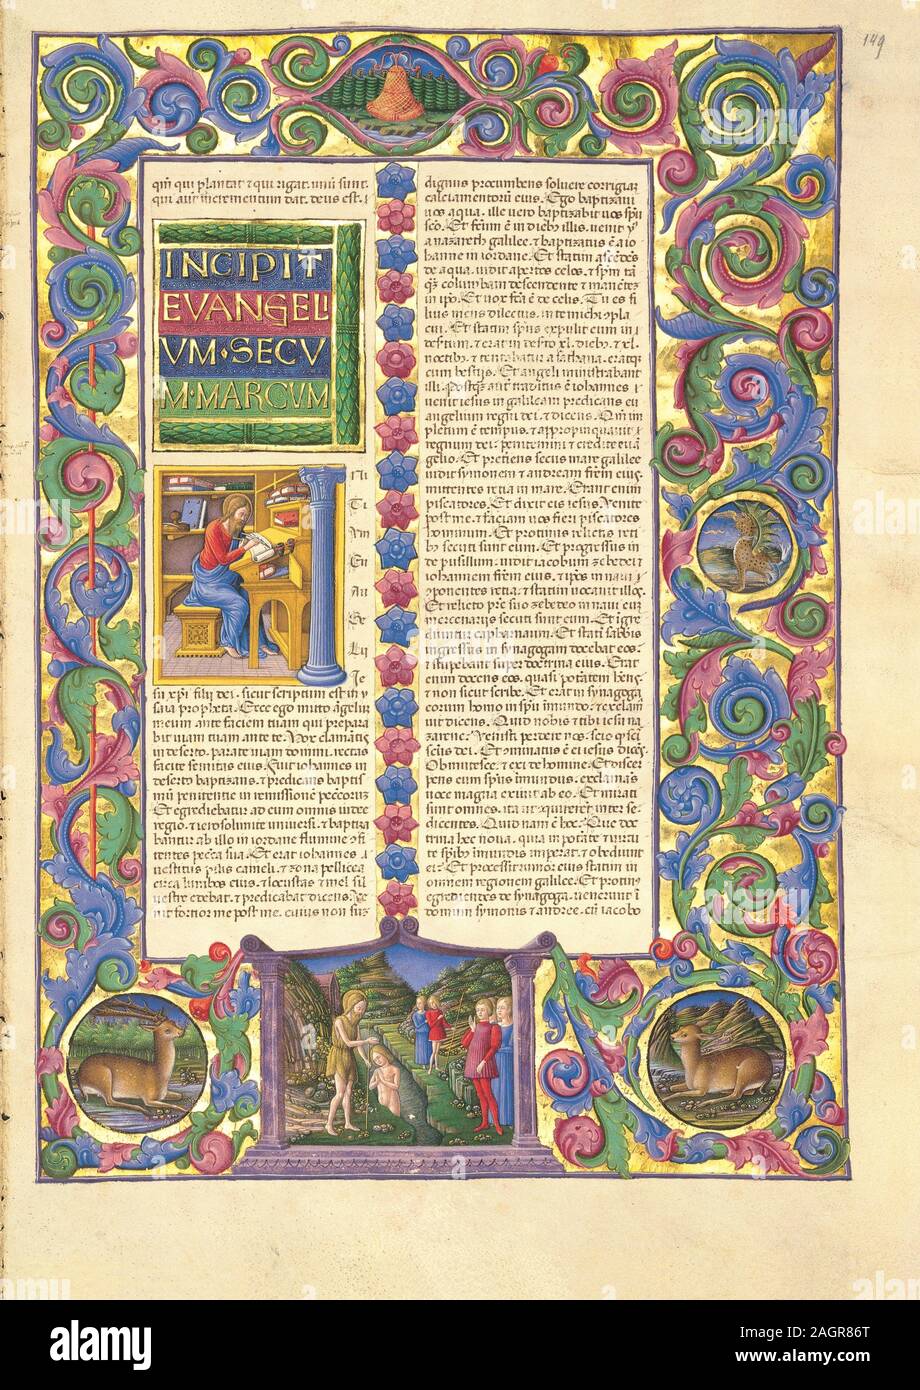 The Bible of Borso d'Este. Museum: Biblioteca Estense Universitaria, Modena. Author: Girolamo da Cremona (Girolamo de'Corradi). Stock Photo